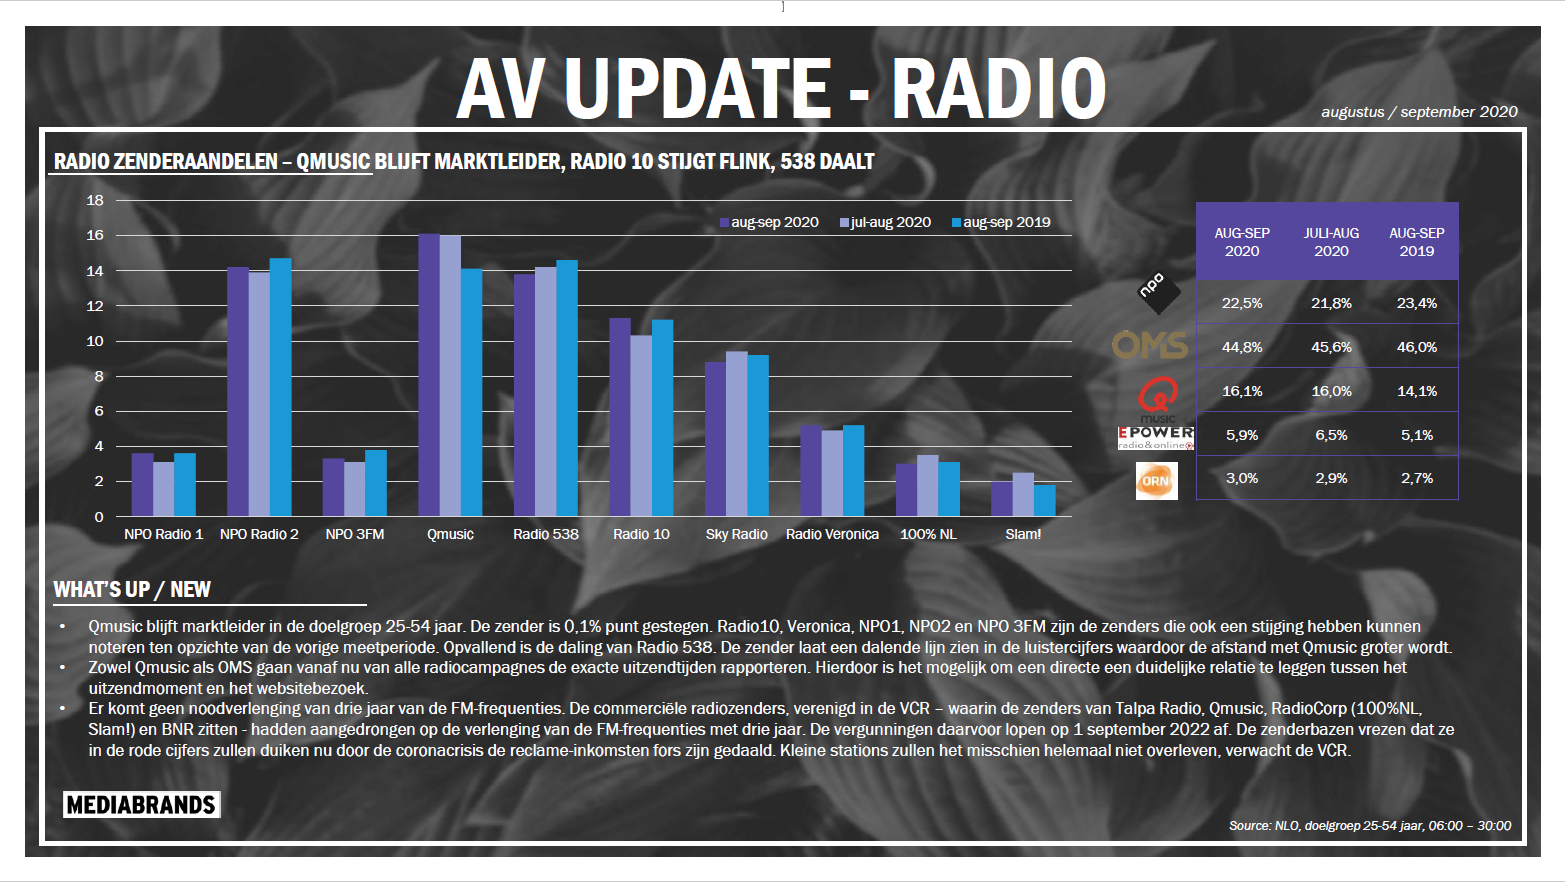 AV Update Radio aug-sep 2020